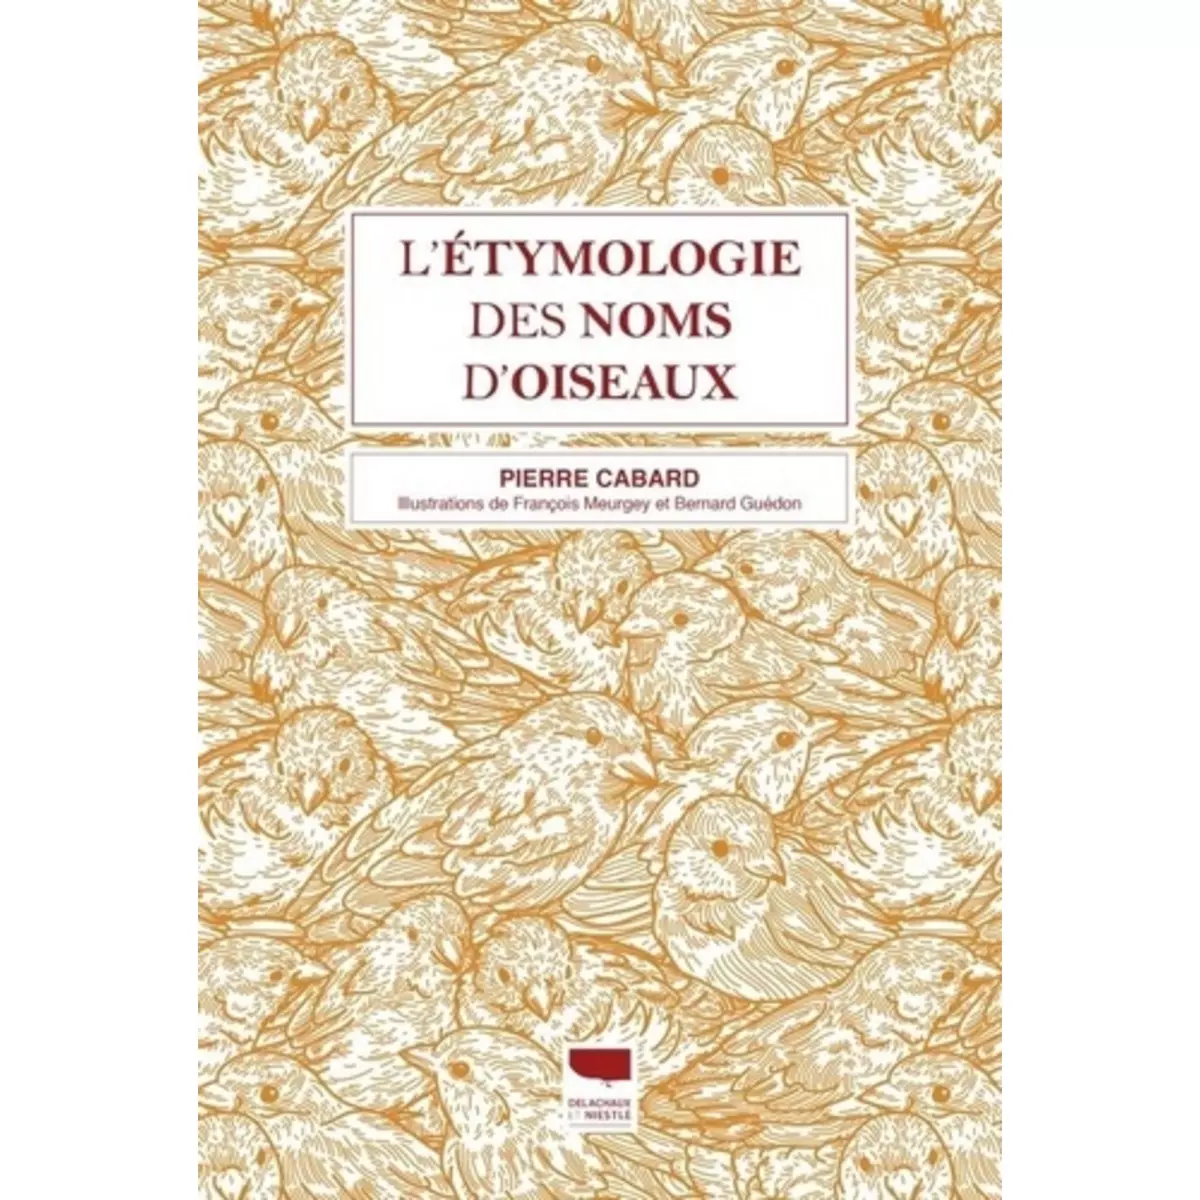  L'ETYMOLOGIE DES NOMS D'OISEAUX. EDITION REVUE ET AUGMENTEE, Cabard Pierre